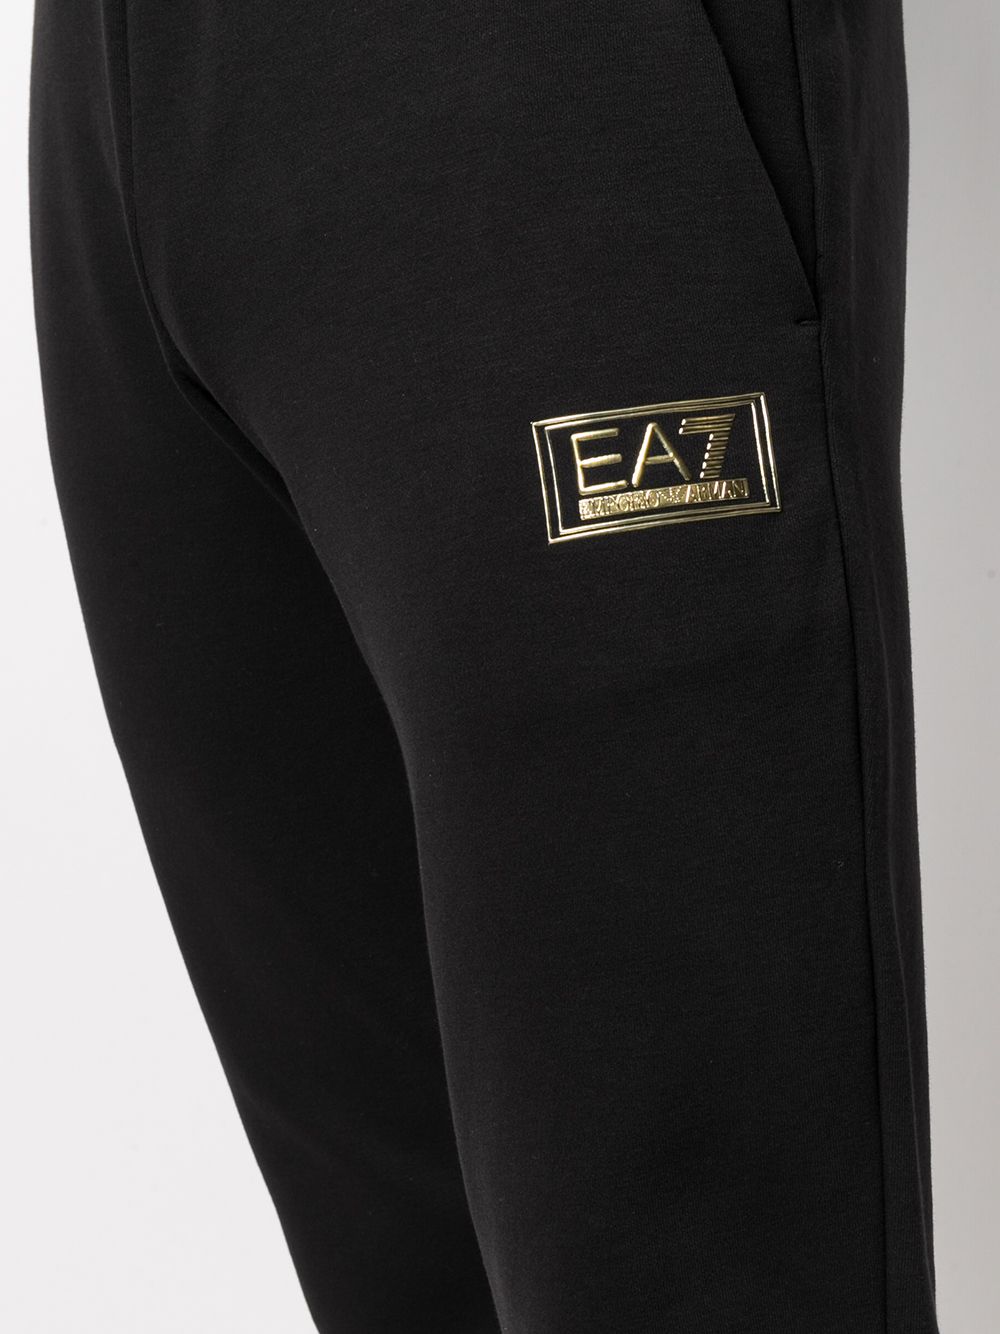 фото Ea7 emporio armani зауженные спортивные брюки с логотипом